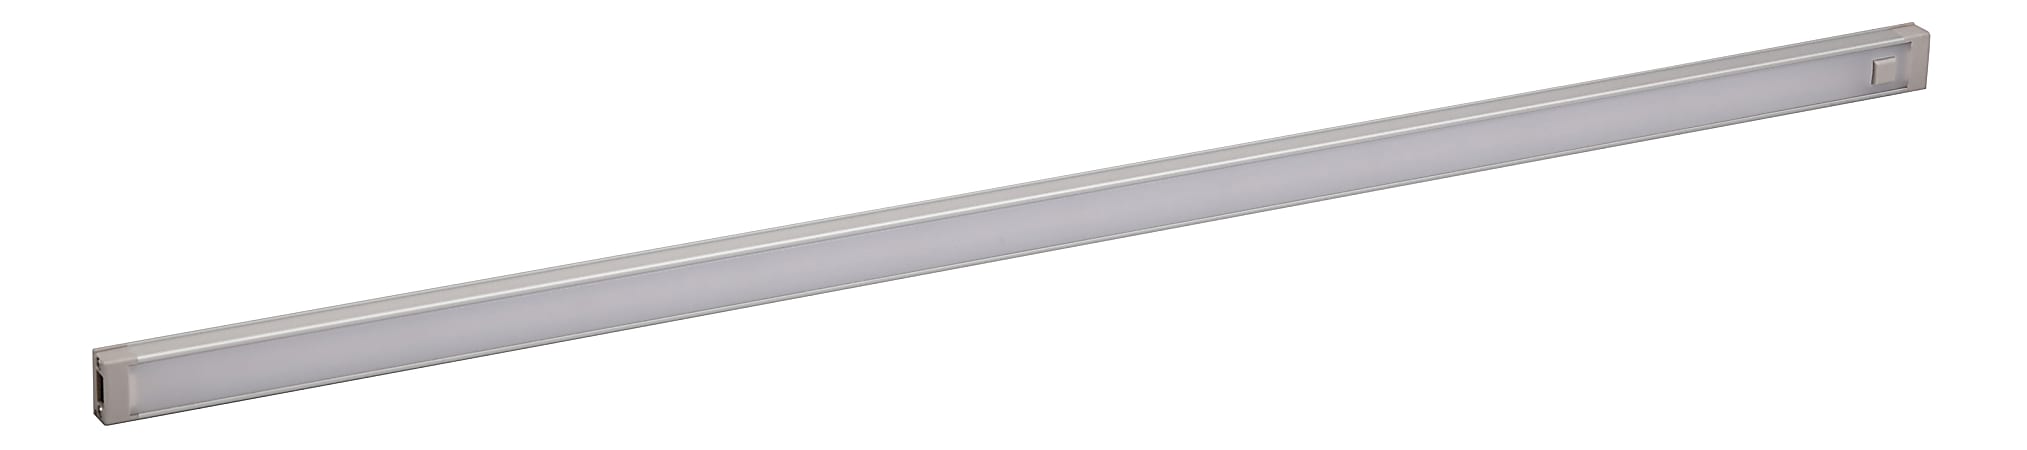 Black & Decker 1-Bar Under-Cabinet LED Lighting Kit, 24", Warm White